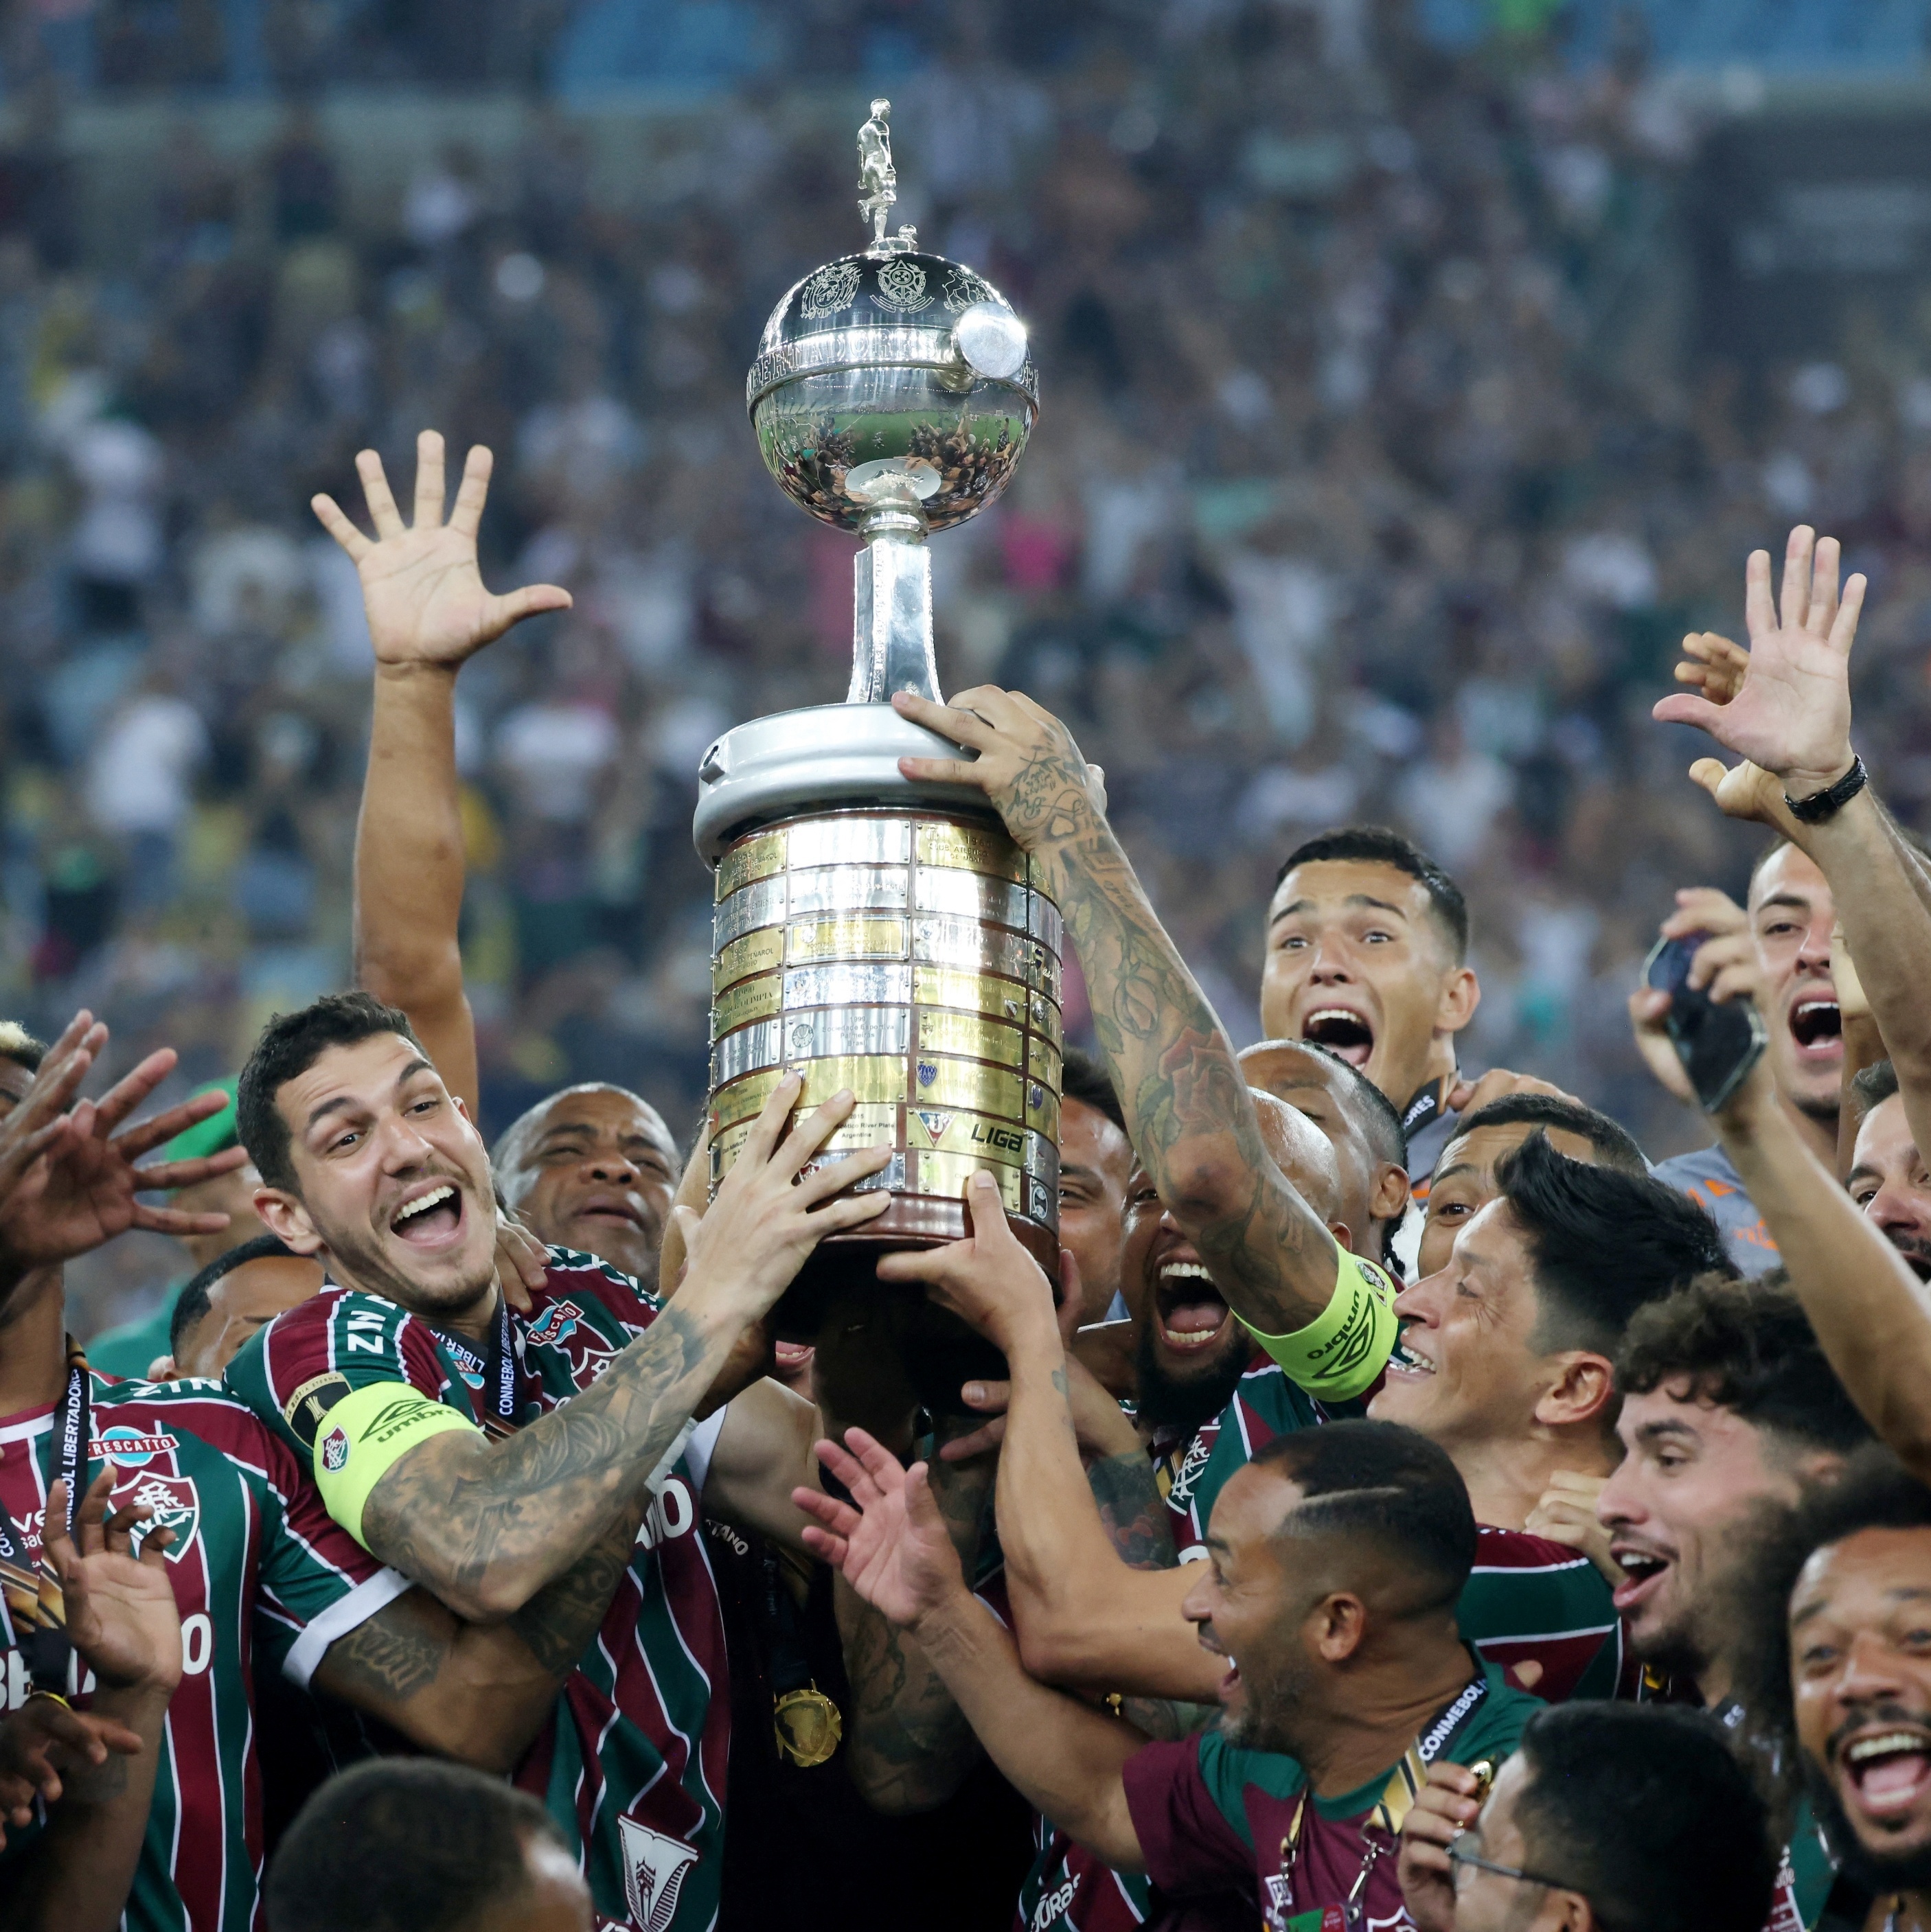 Fortaleza garante vaga direta na fase de grupos da Libertadores de